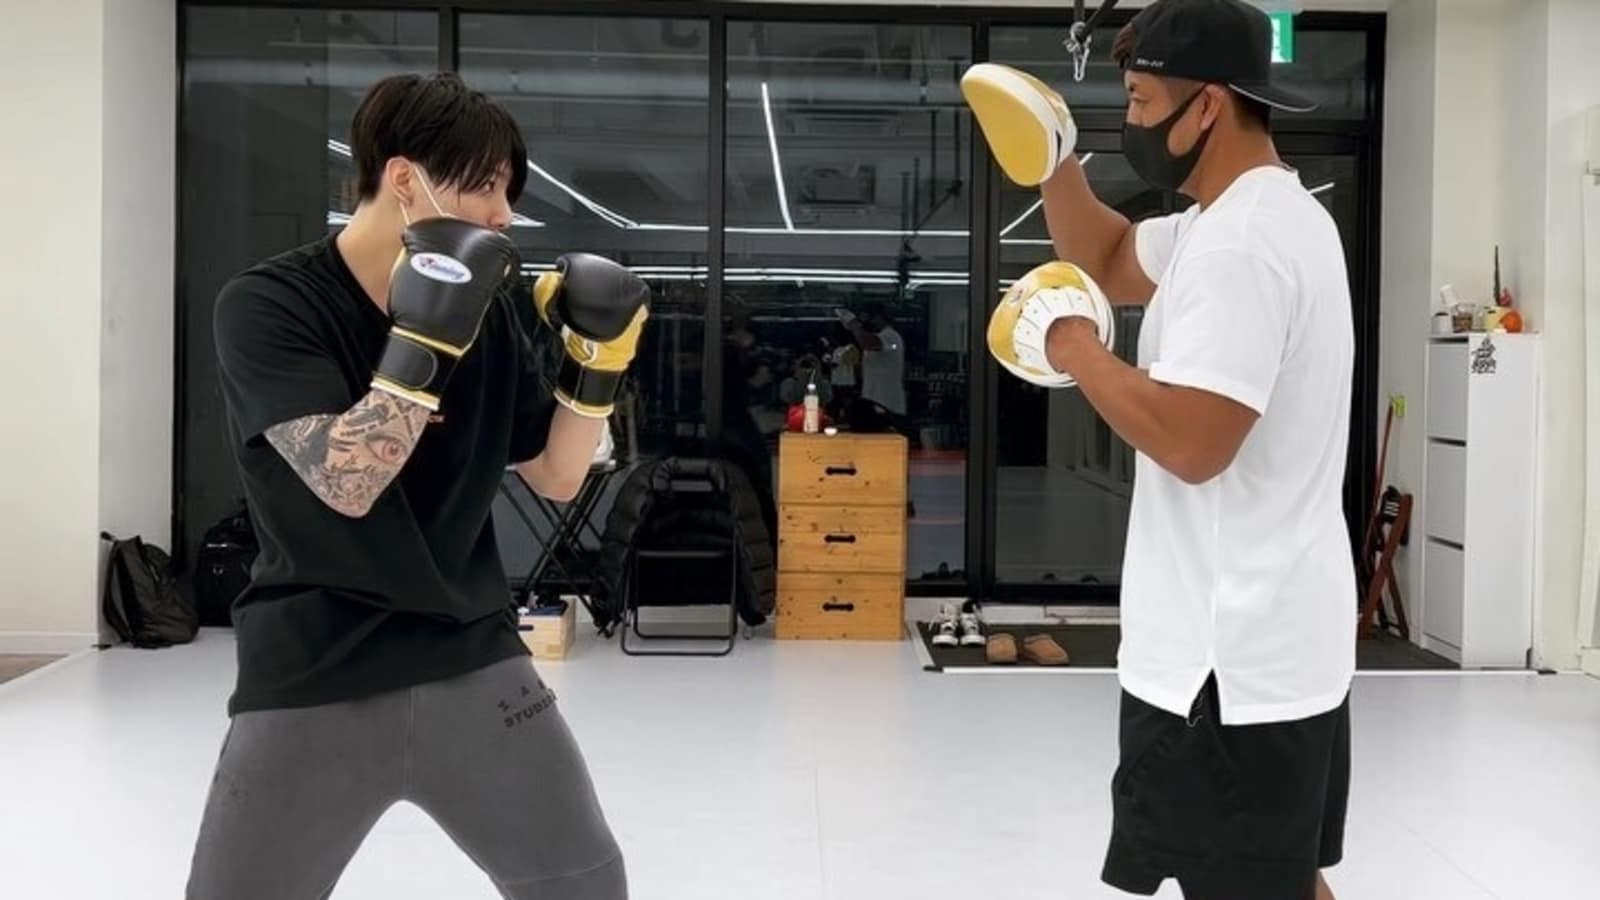 Jungkook de BTS mostrando sus habilidades de boxeo en un nuevo video es la motivación de entrenamiento que necesitamos, V responde: Ver |  Salud